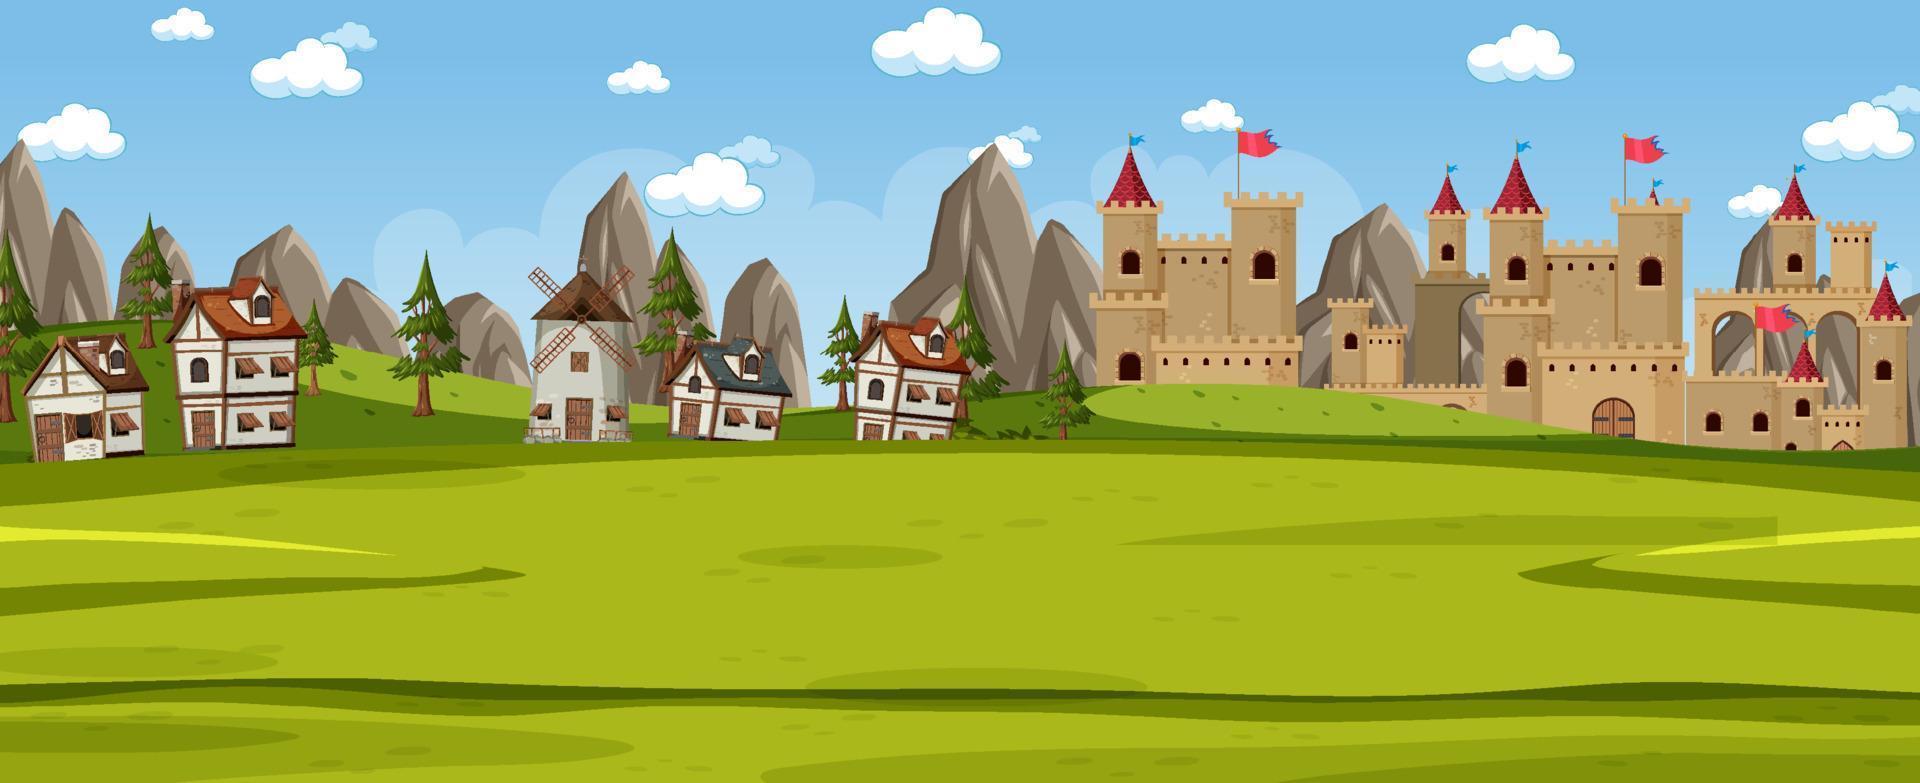 scène de paysage avec ville médiévale vecteur